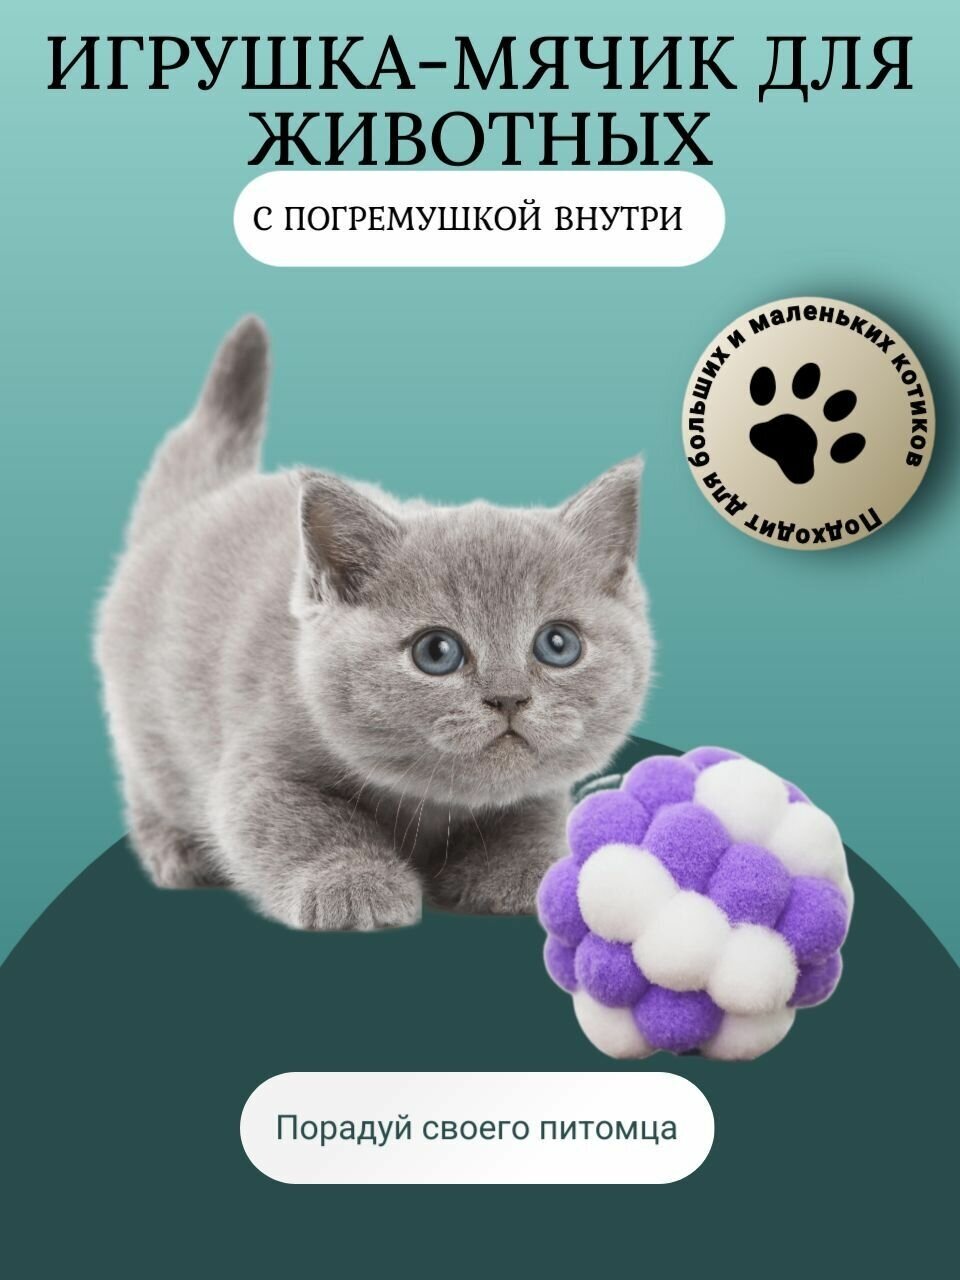 Игрушка-мячик для животных с погремушкой внутри, шерстяная игрушка-дразнилка для котов, 4,5см, Цвет бело-фиолетовый - фотография № 1